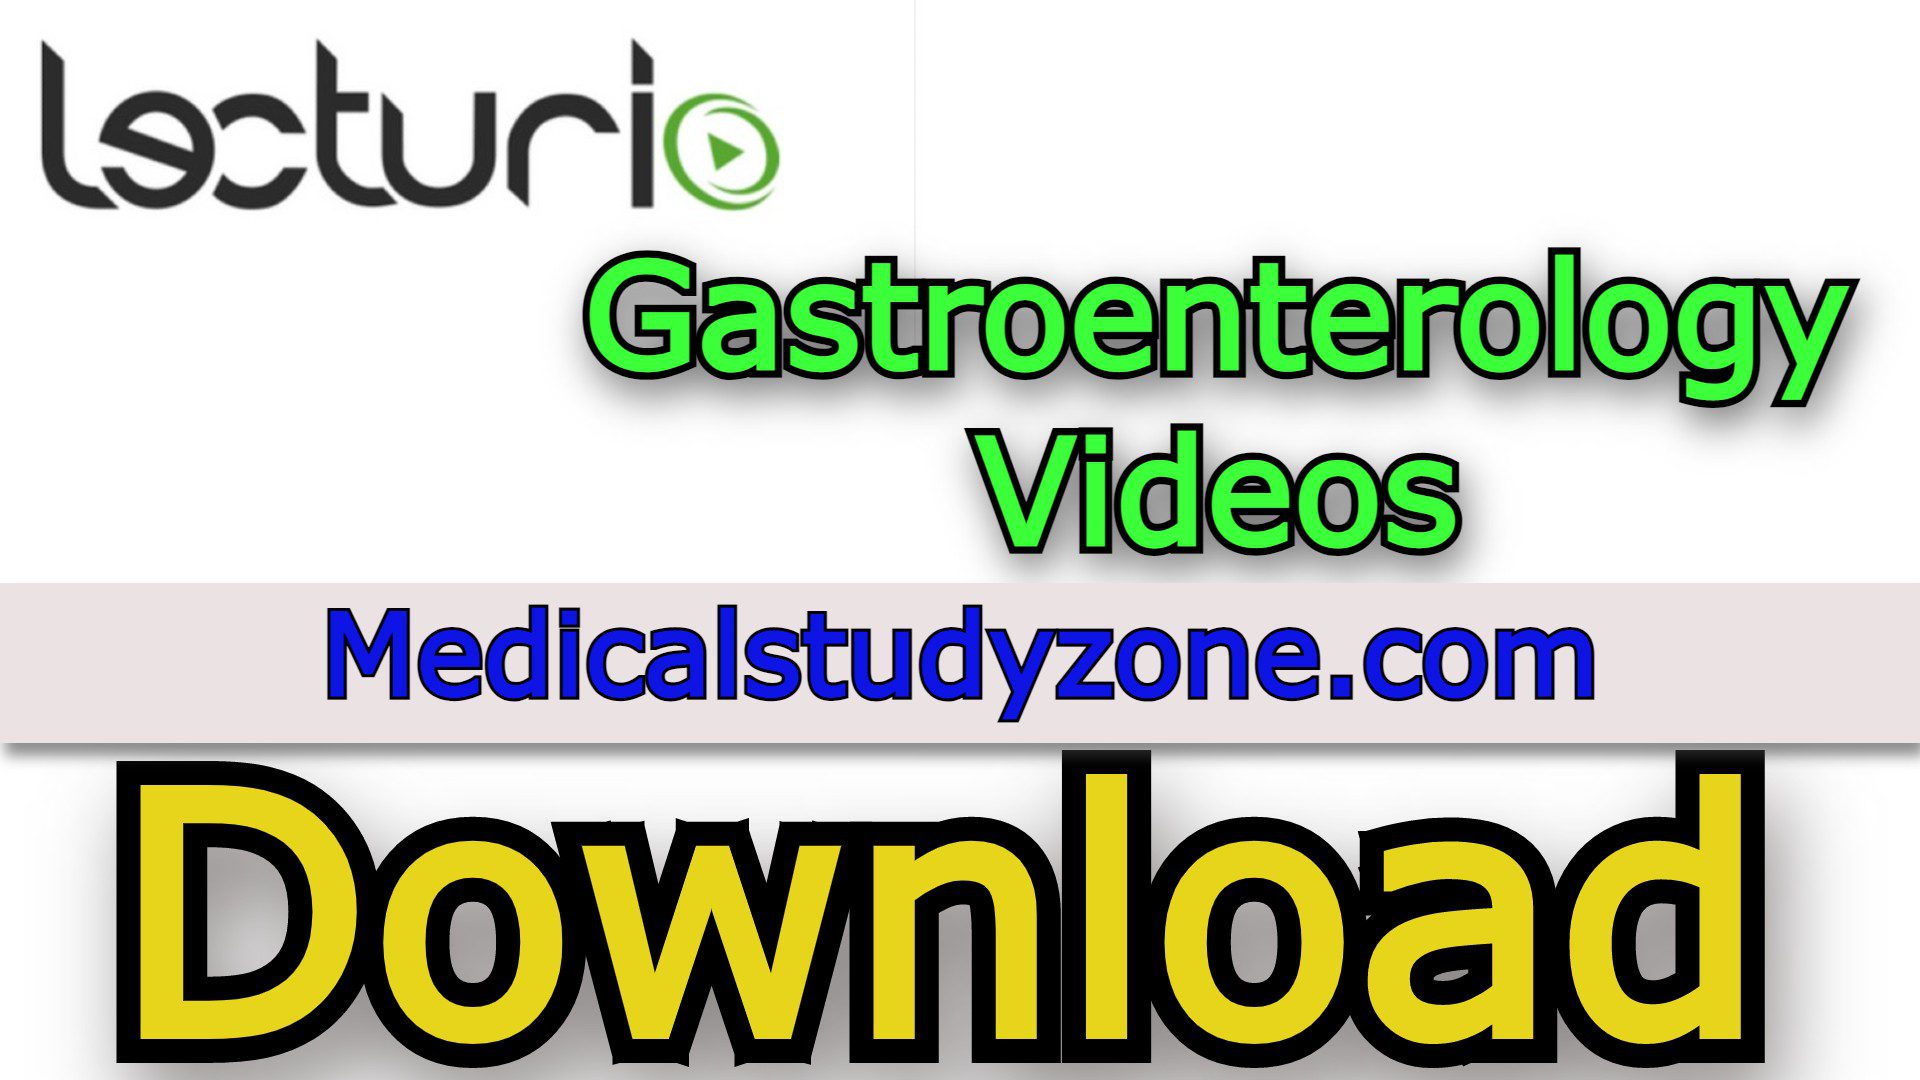 Lecturio Gastroenterology Premium Videos 2022 Free Download